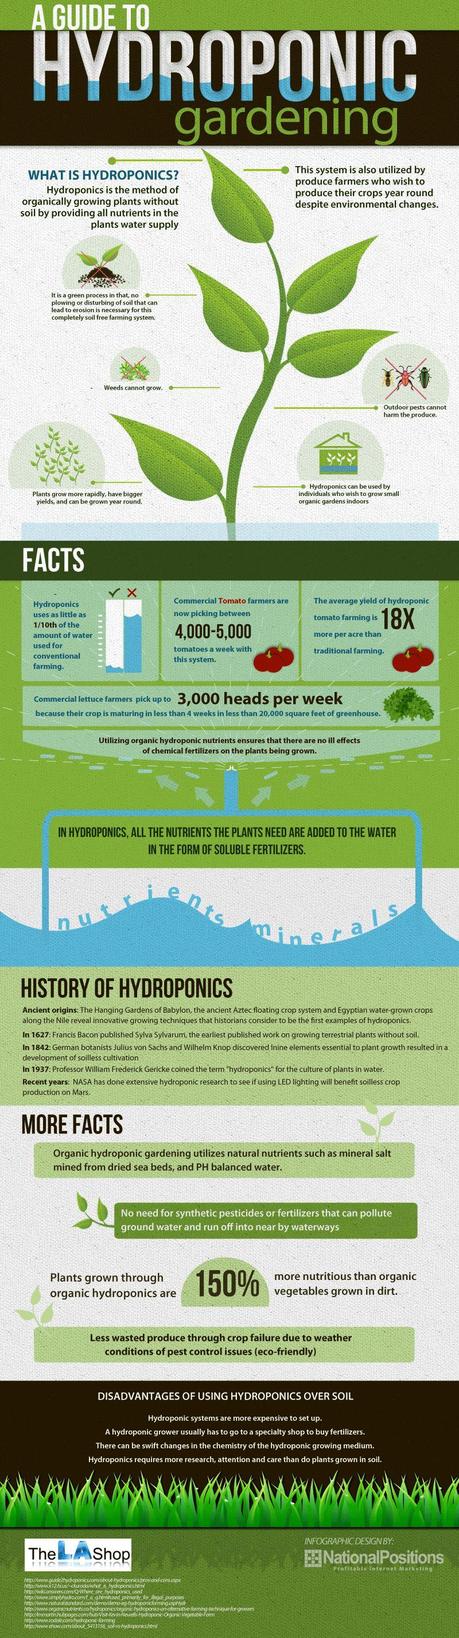 L'idroponica, la coltivazione fuori  suolo: un'infografica